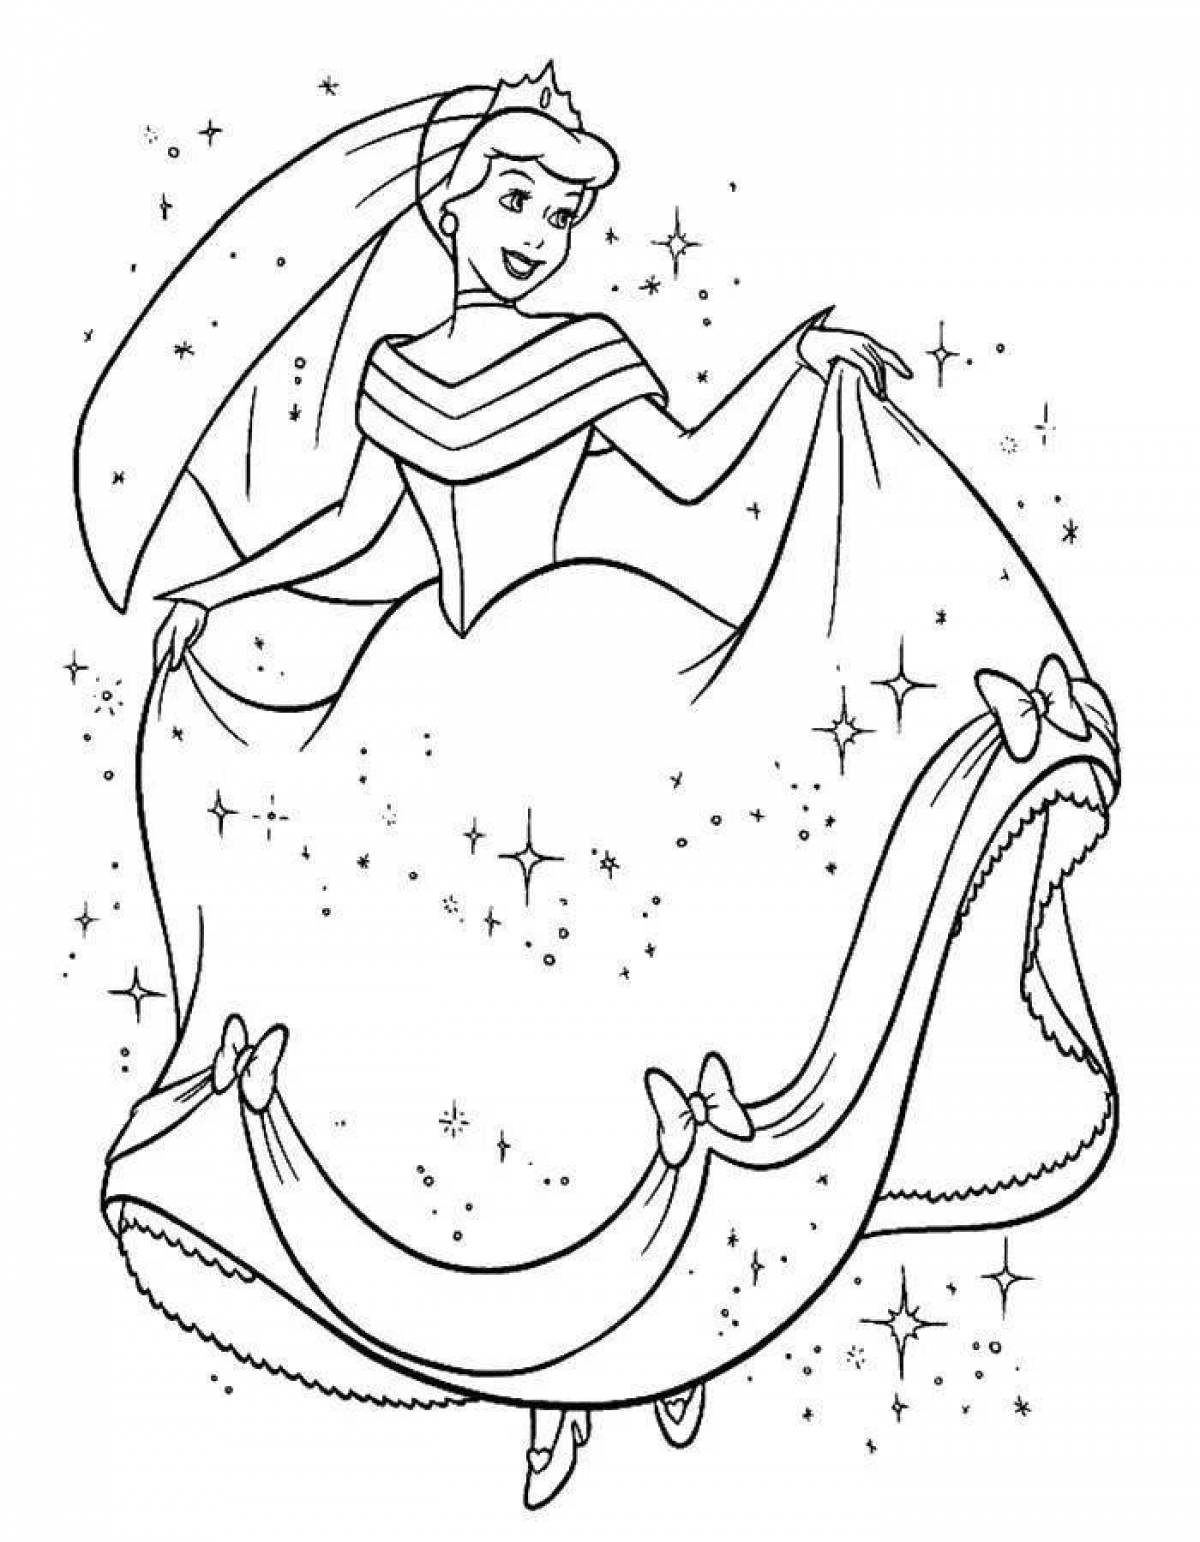 Rampant Cinderella coloring book for kids